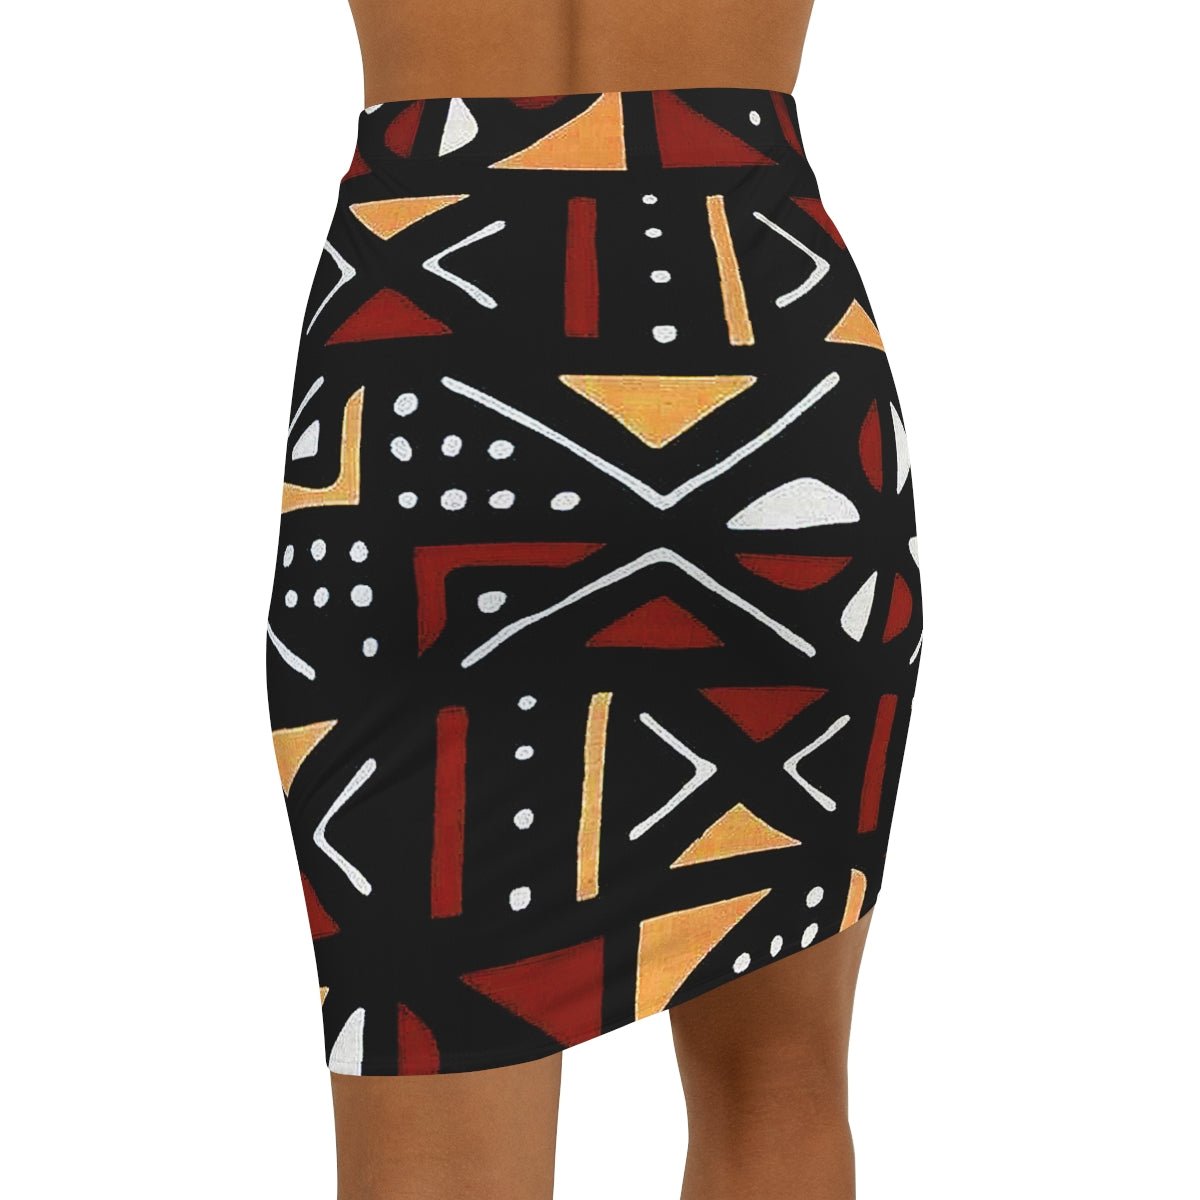 African Mini Short Skirt Bogolan Print - Bynelo